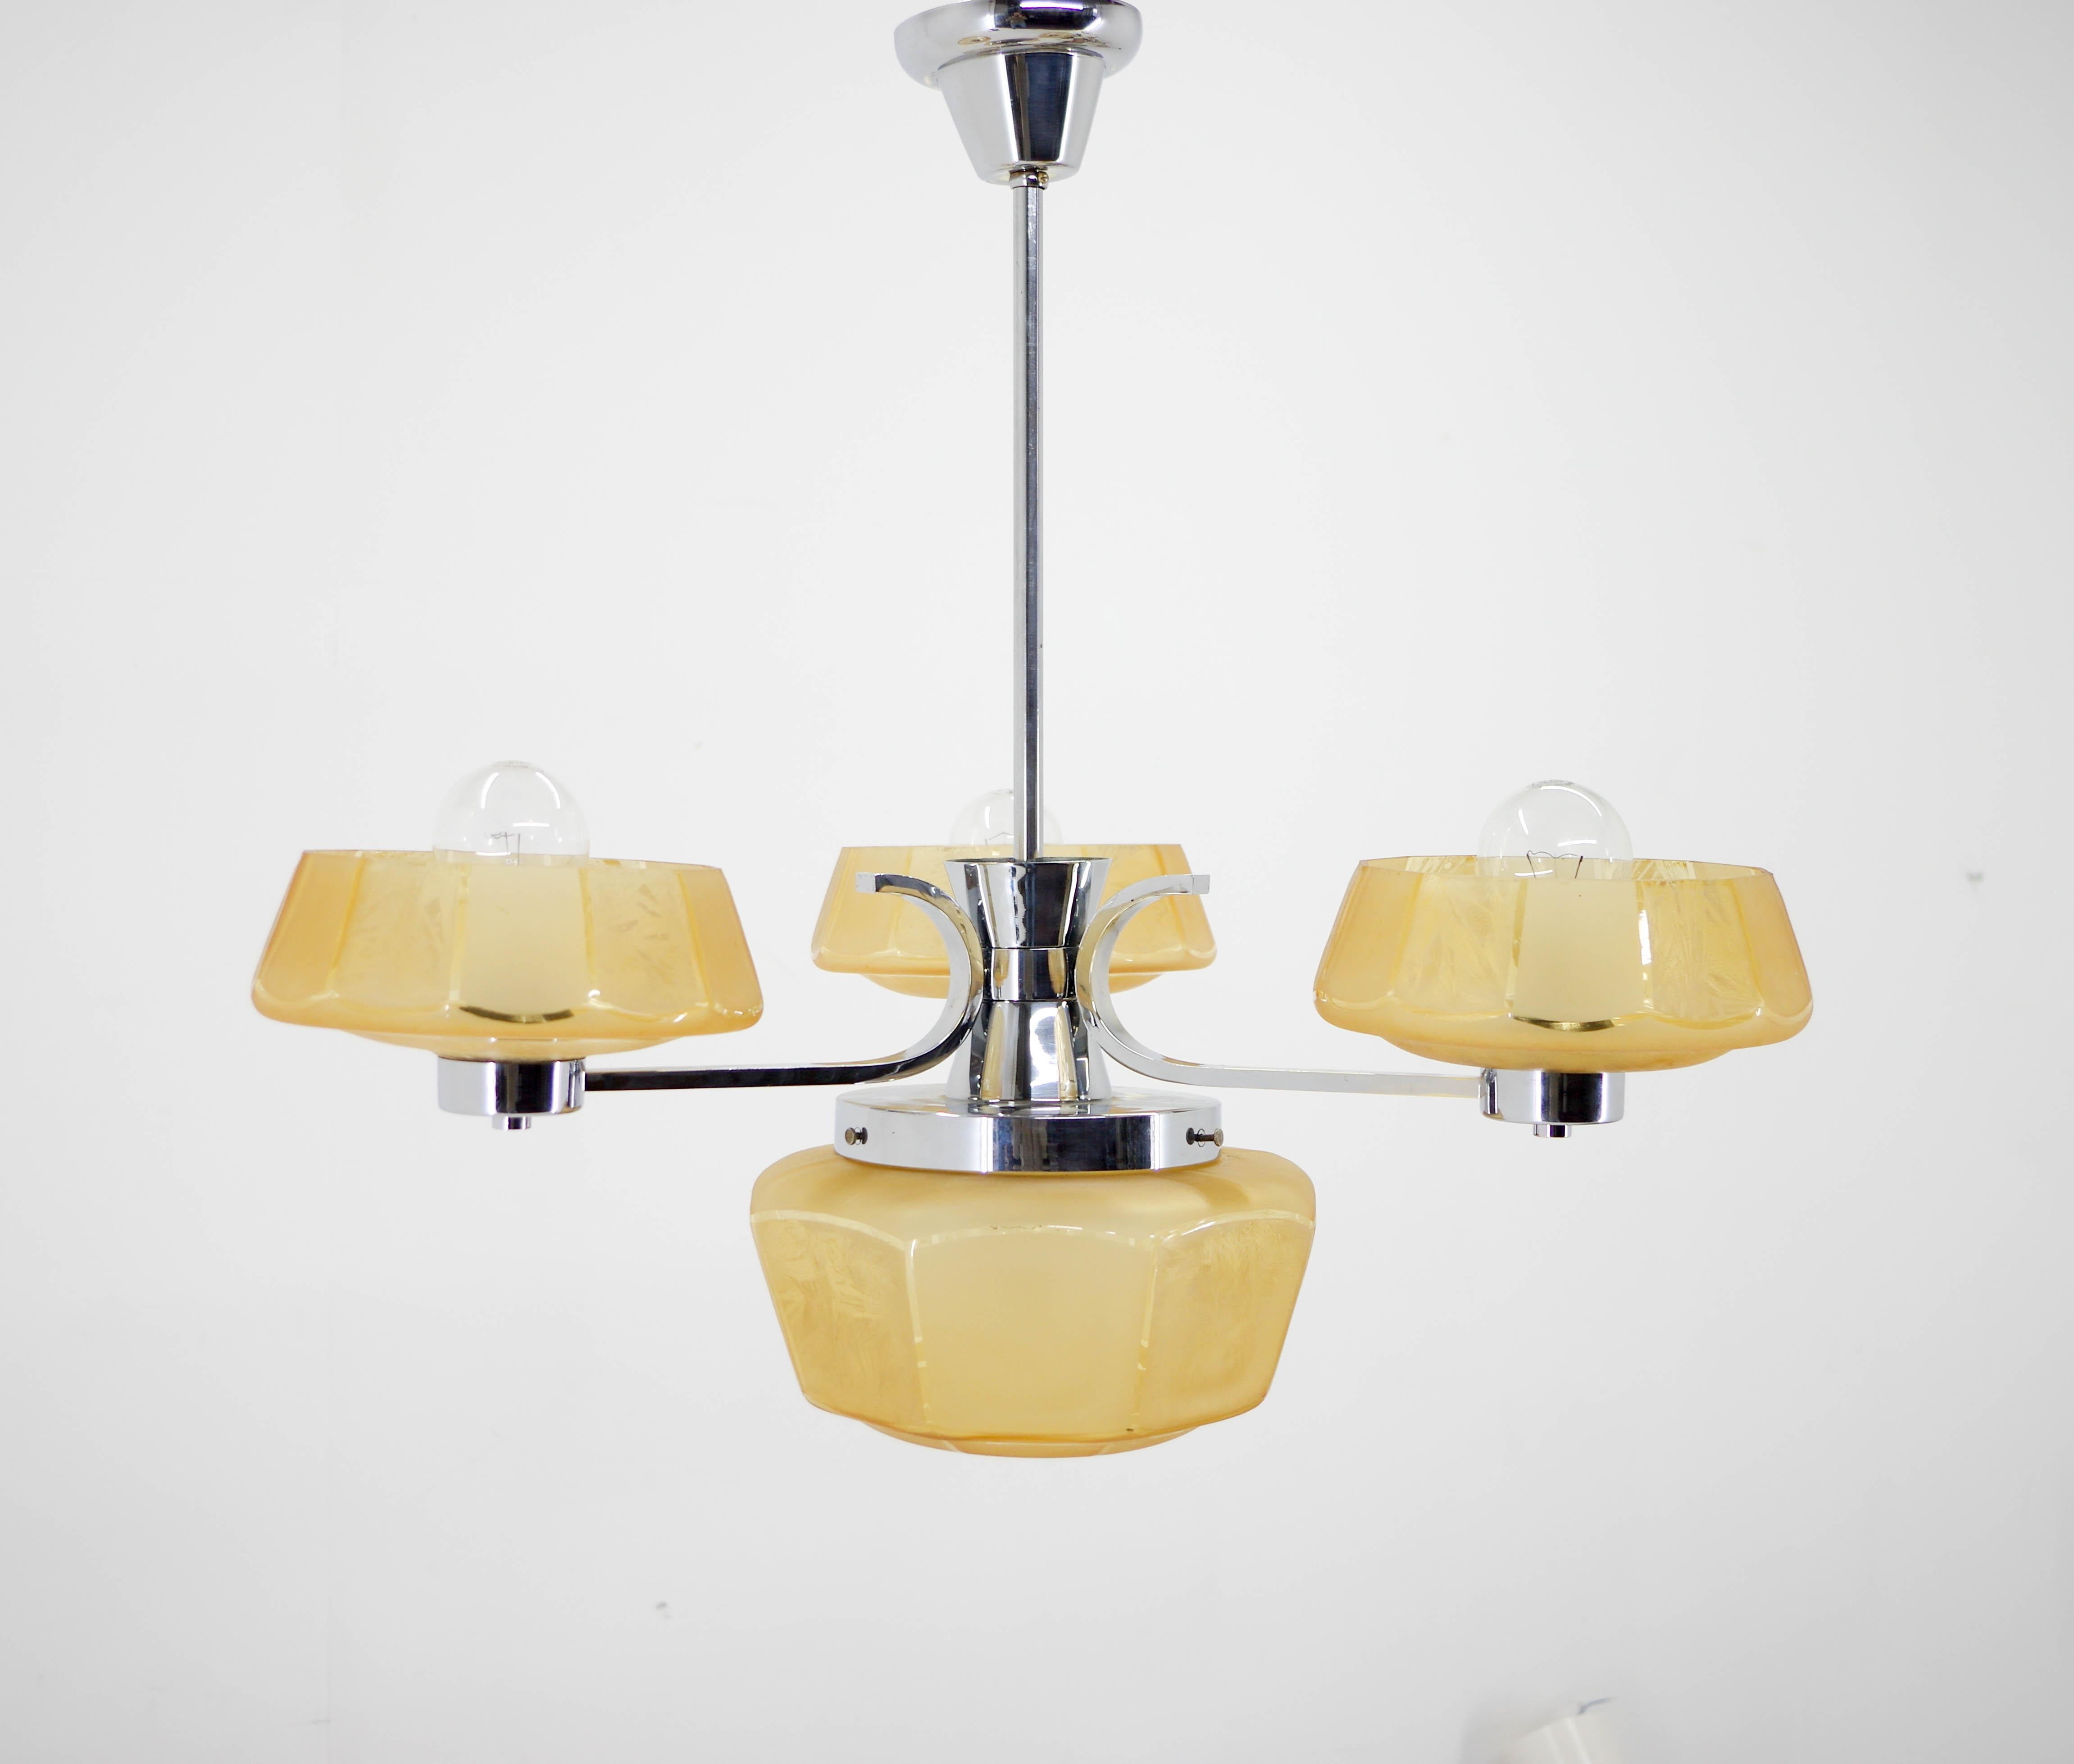 Art Deco Kronleuchter aus Chrom und Glas.
Restauriert: gereinigt, neu verkabelt - zwei getrennte Stromkreise 1+3x40W, E25-E27 Glühbirnen
US-Verkabelung kompatibel